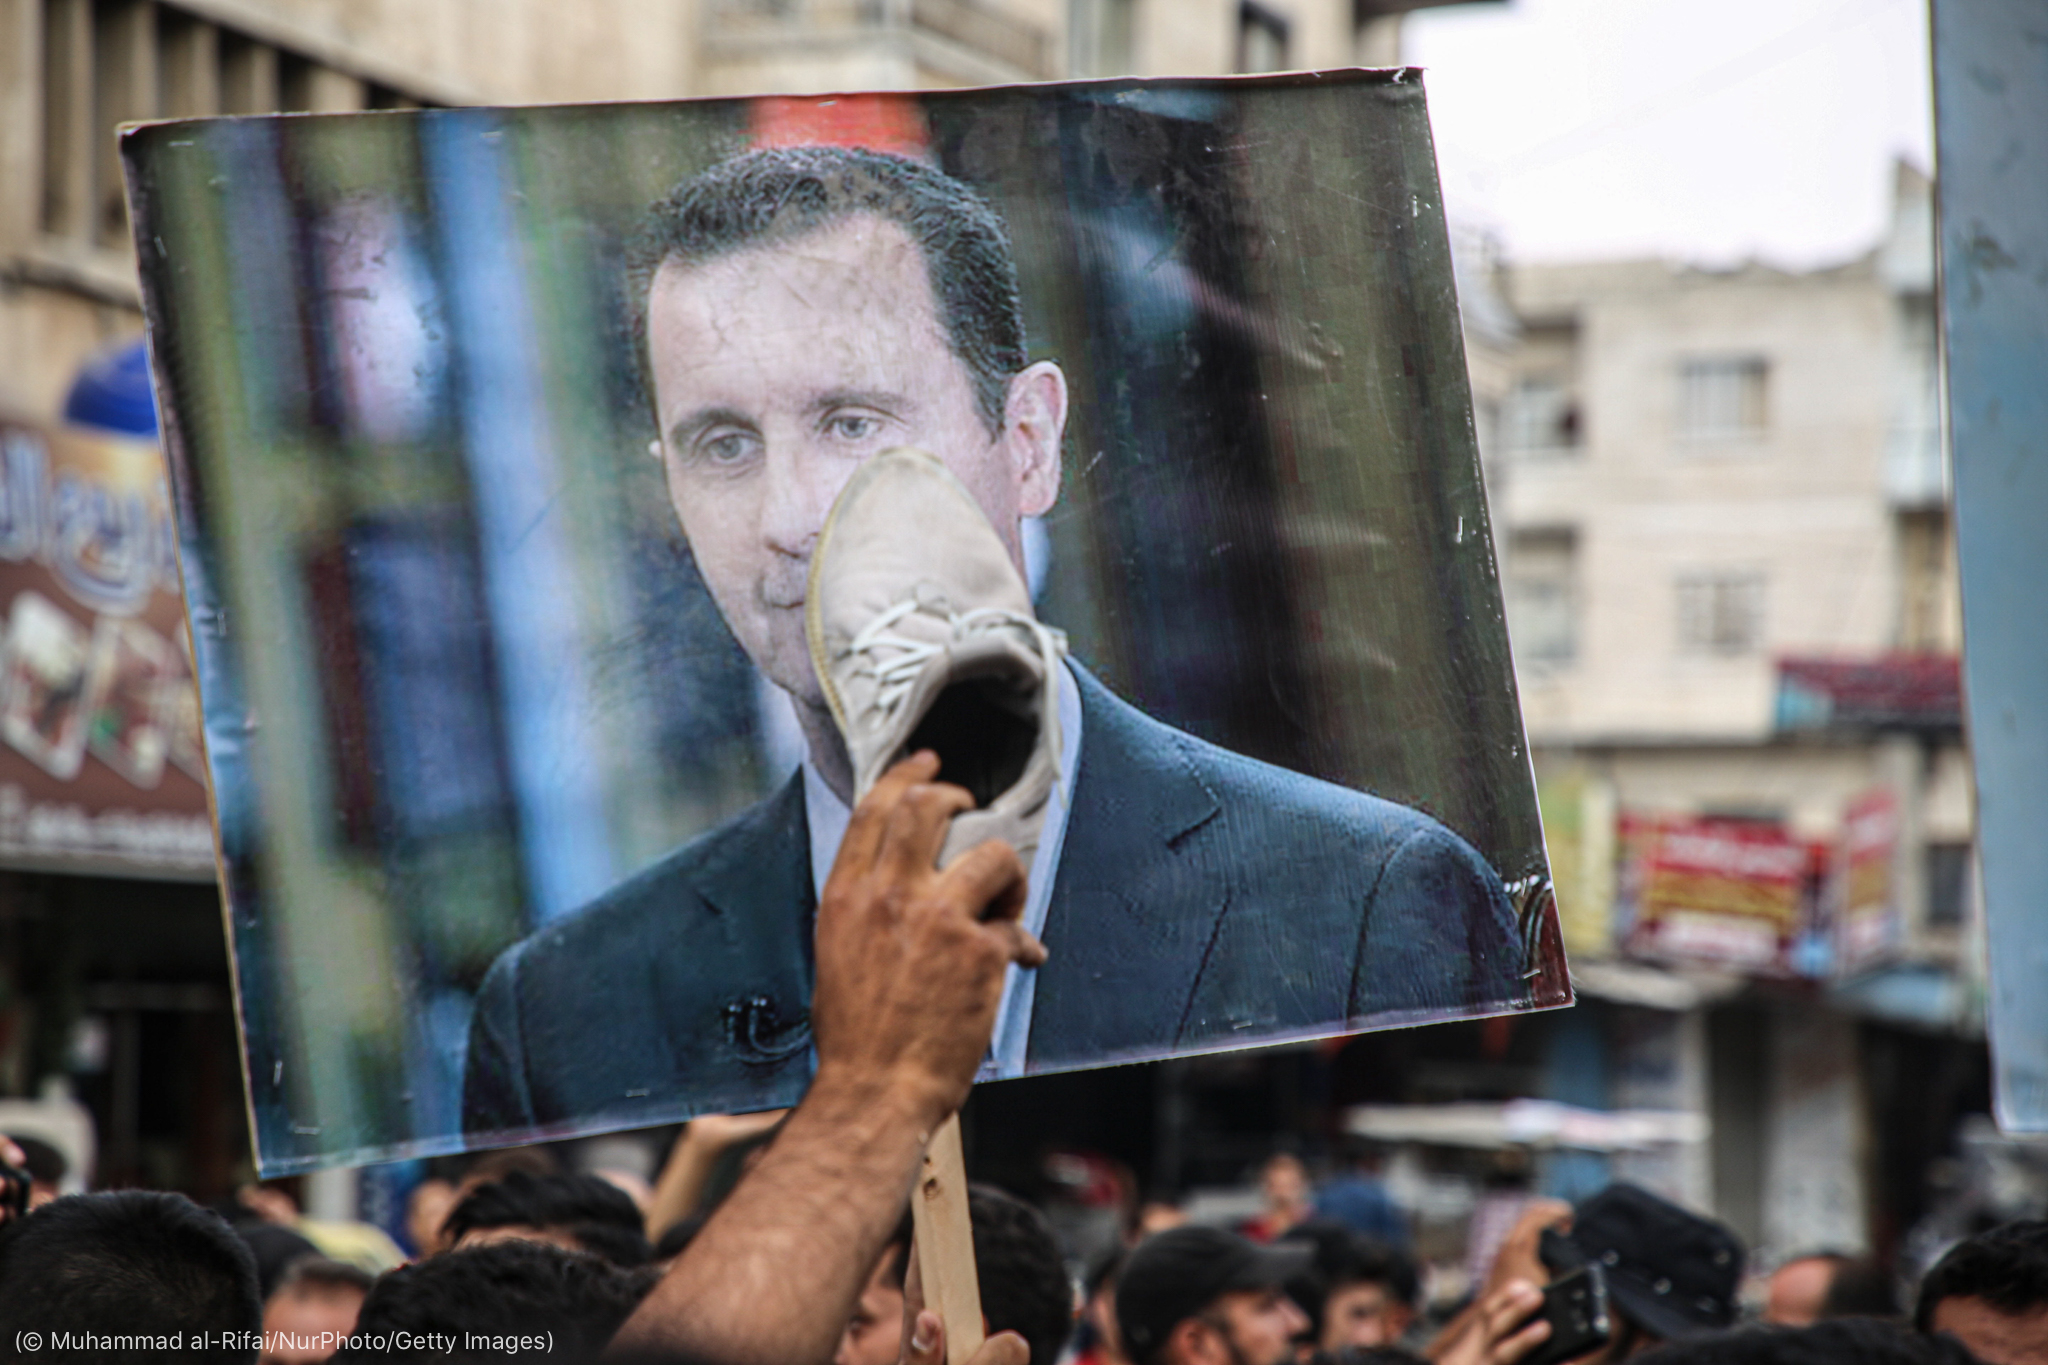 ضرب صور بشار بالاحذية داخل سوريا - فيسبوك